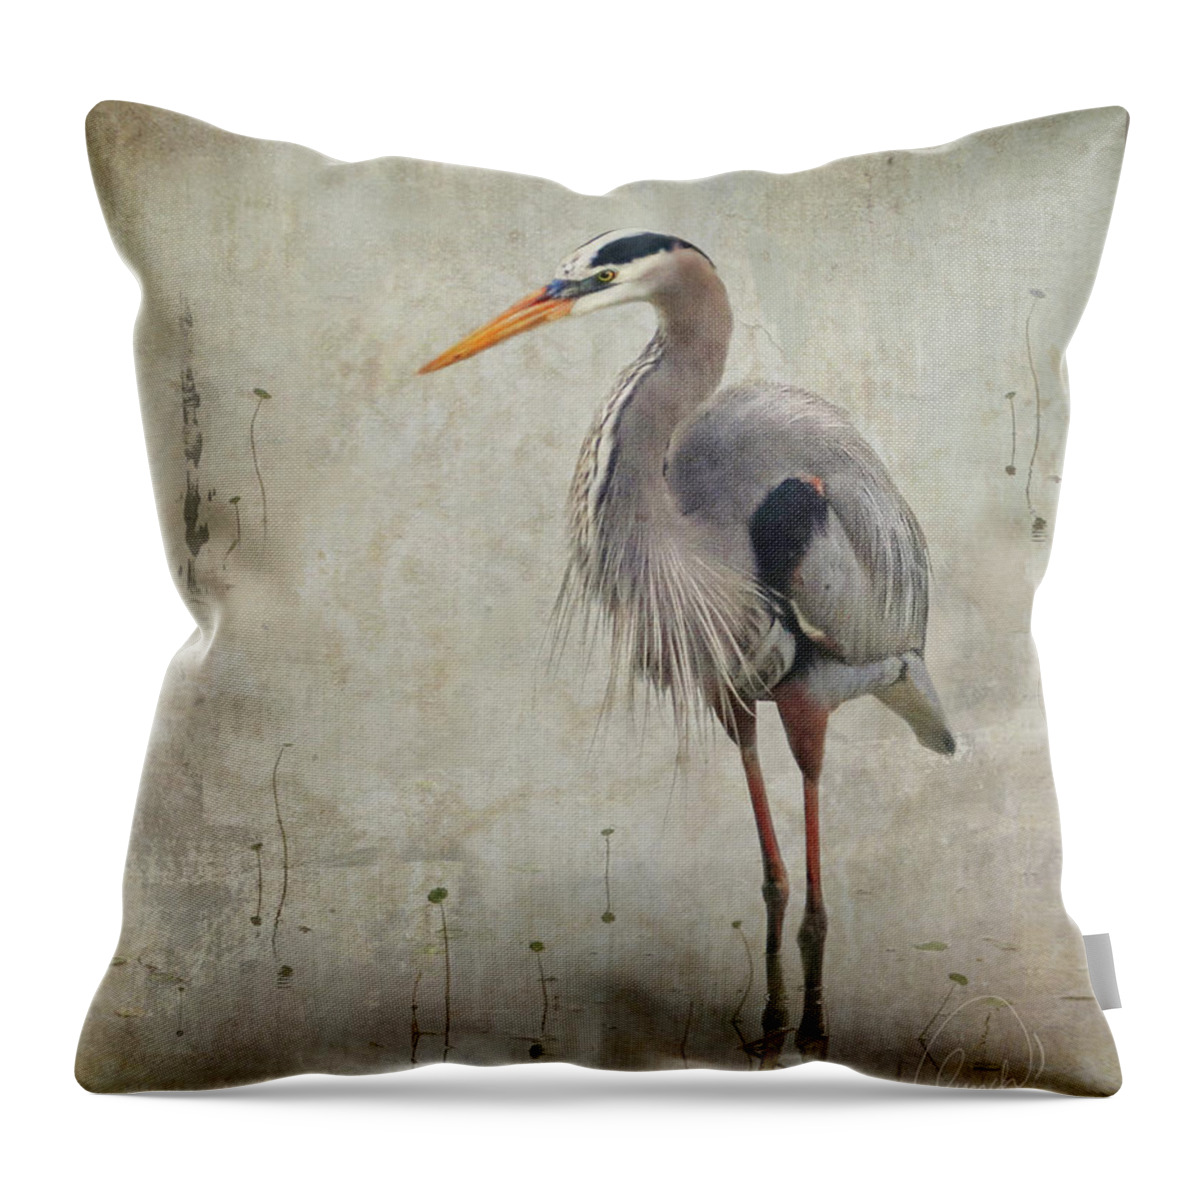 Bird Throw Pillow featuring the photograph Numachi by Karen Lynch